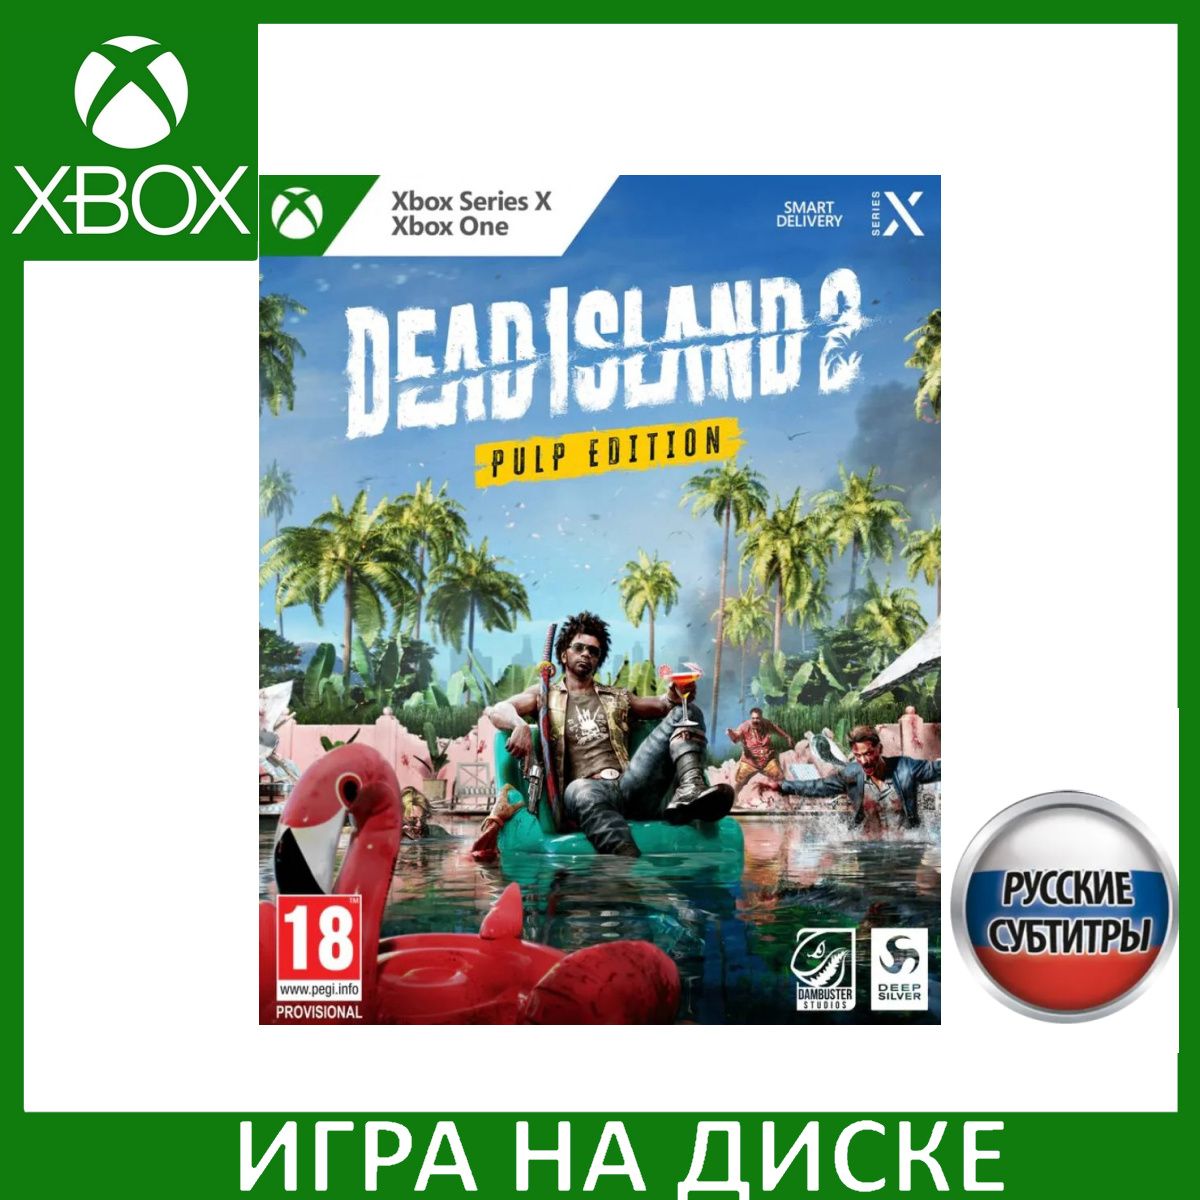 Игра Dead Island 2 Pulp Edition (Xbox Series, Xbox One, Русские субтитры)  купить по низкой цене с доставкой в интернет-магазине OZON (1331079050)